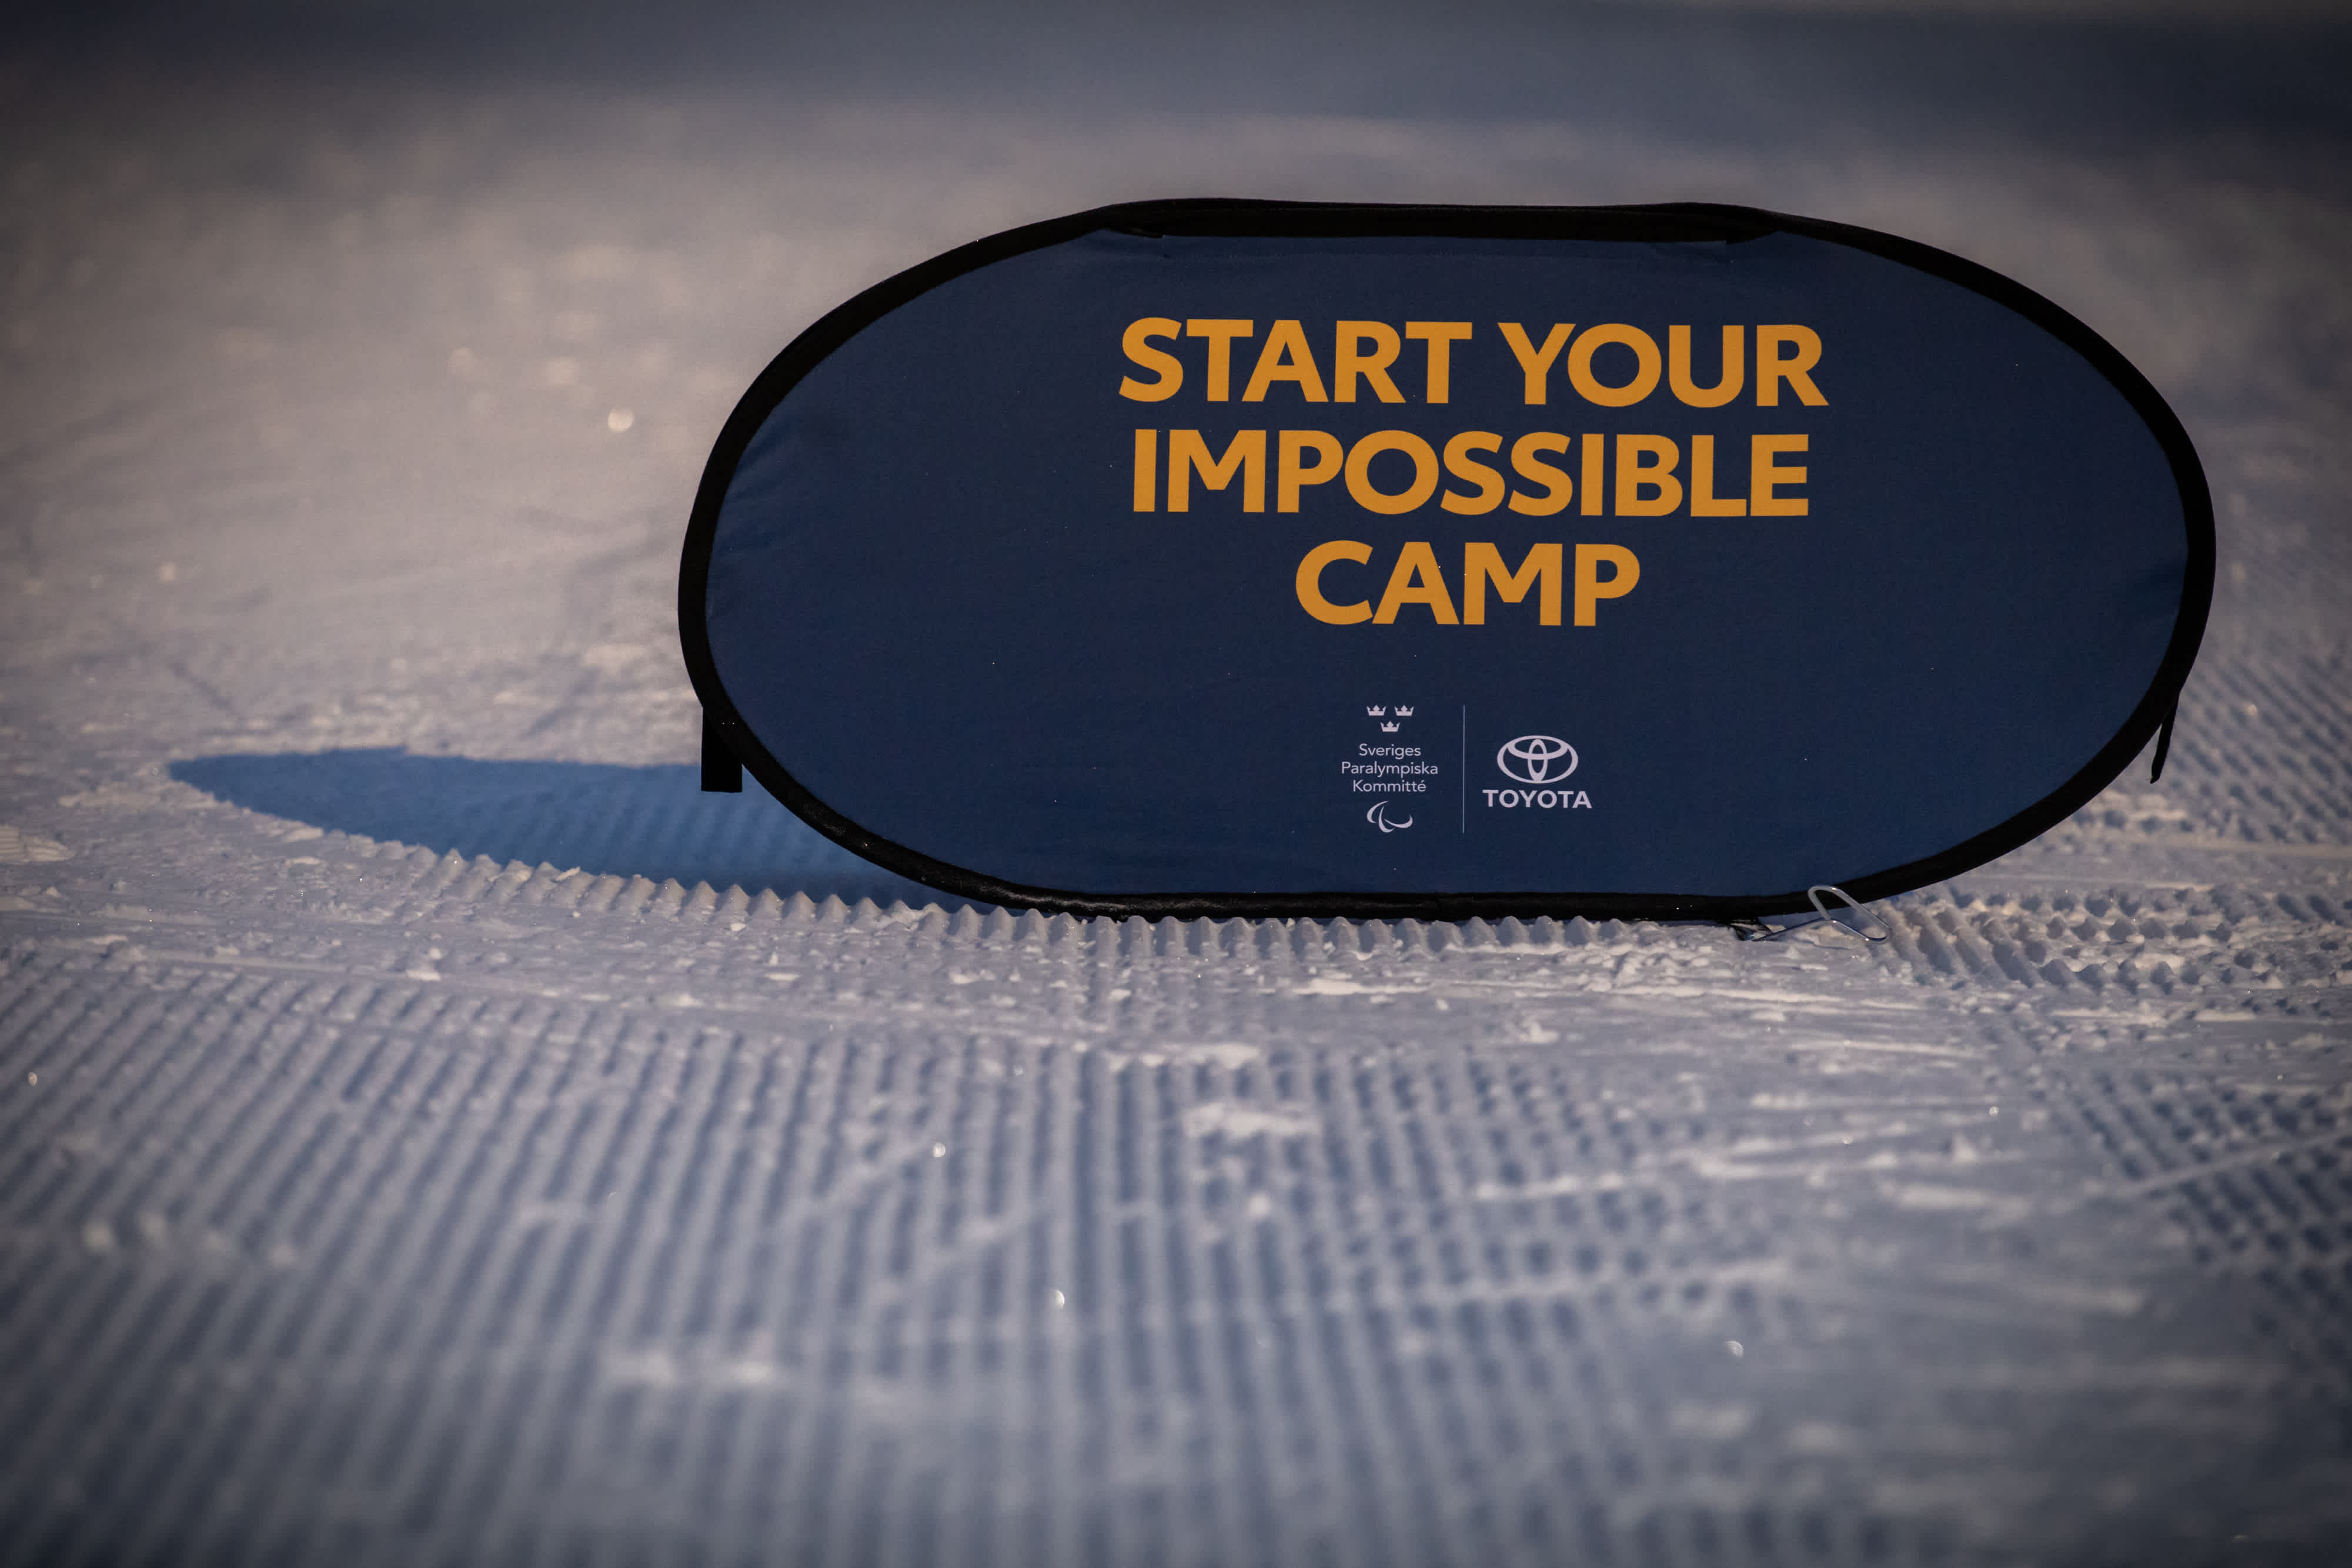 Start Your Impossible Camp skylt står ute i snö.